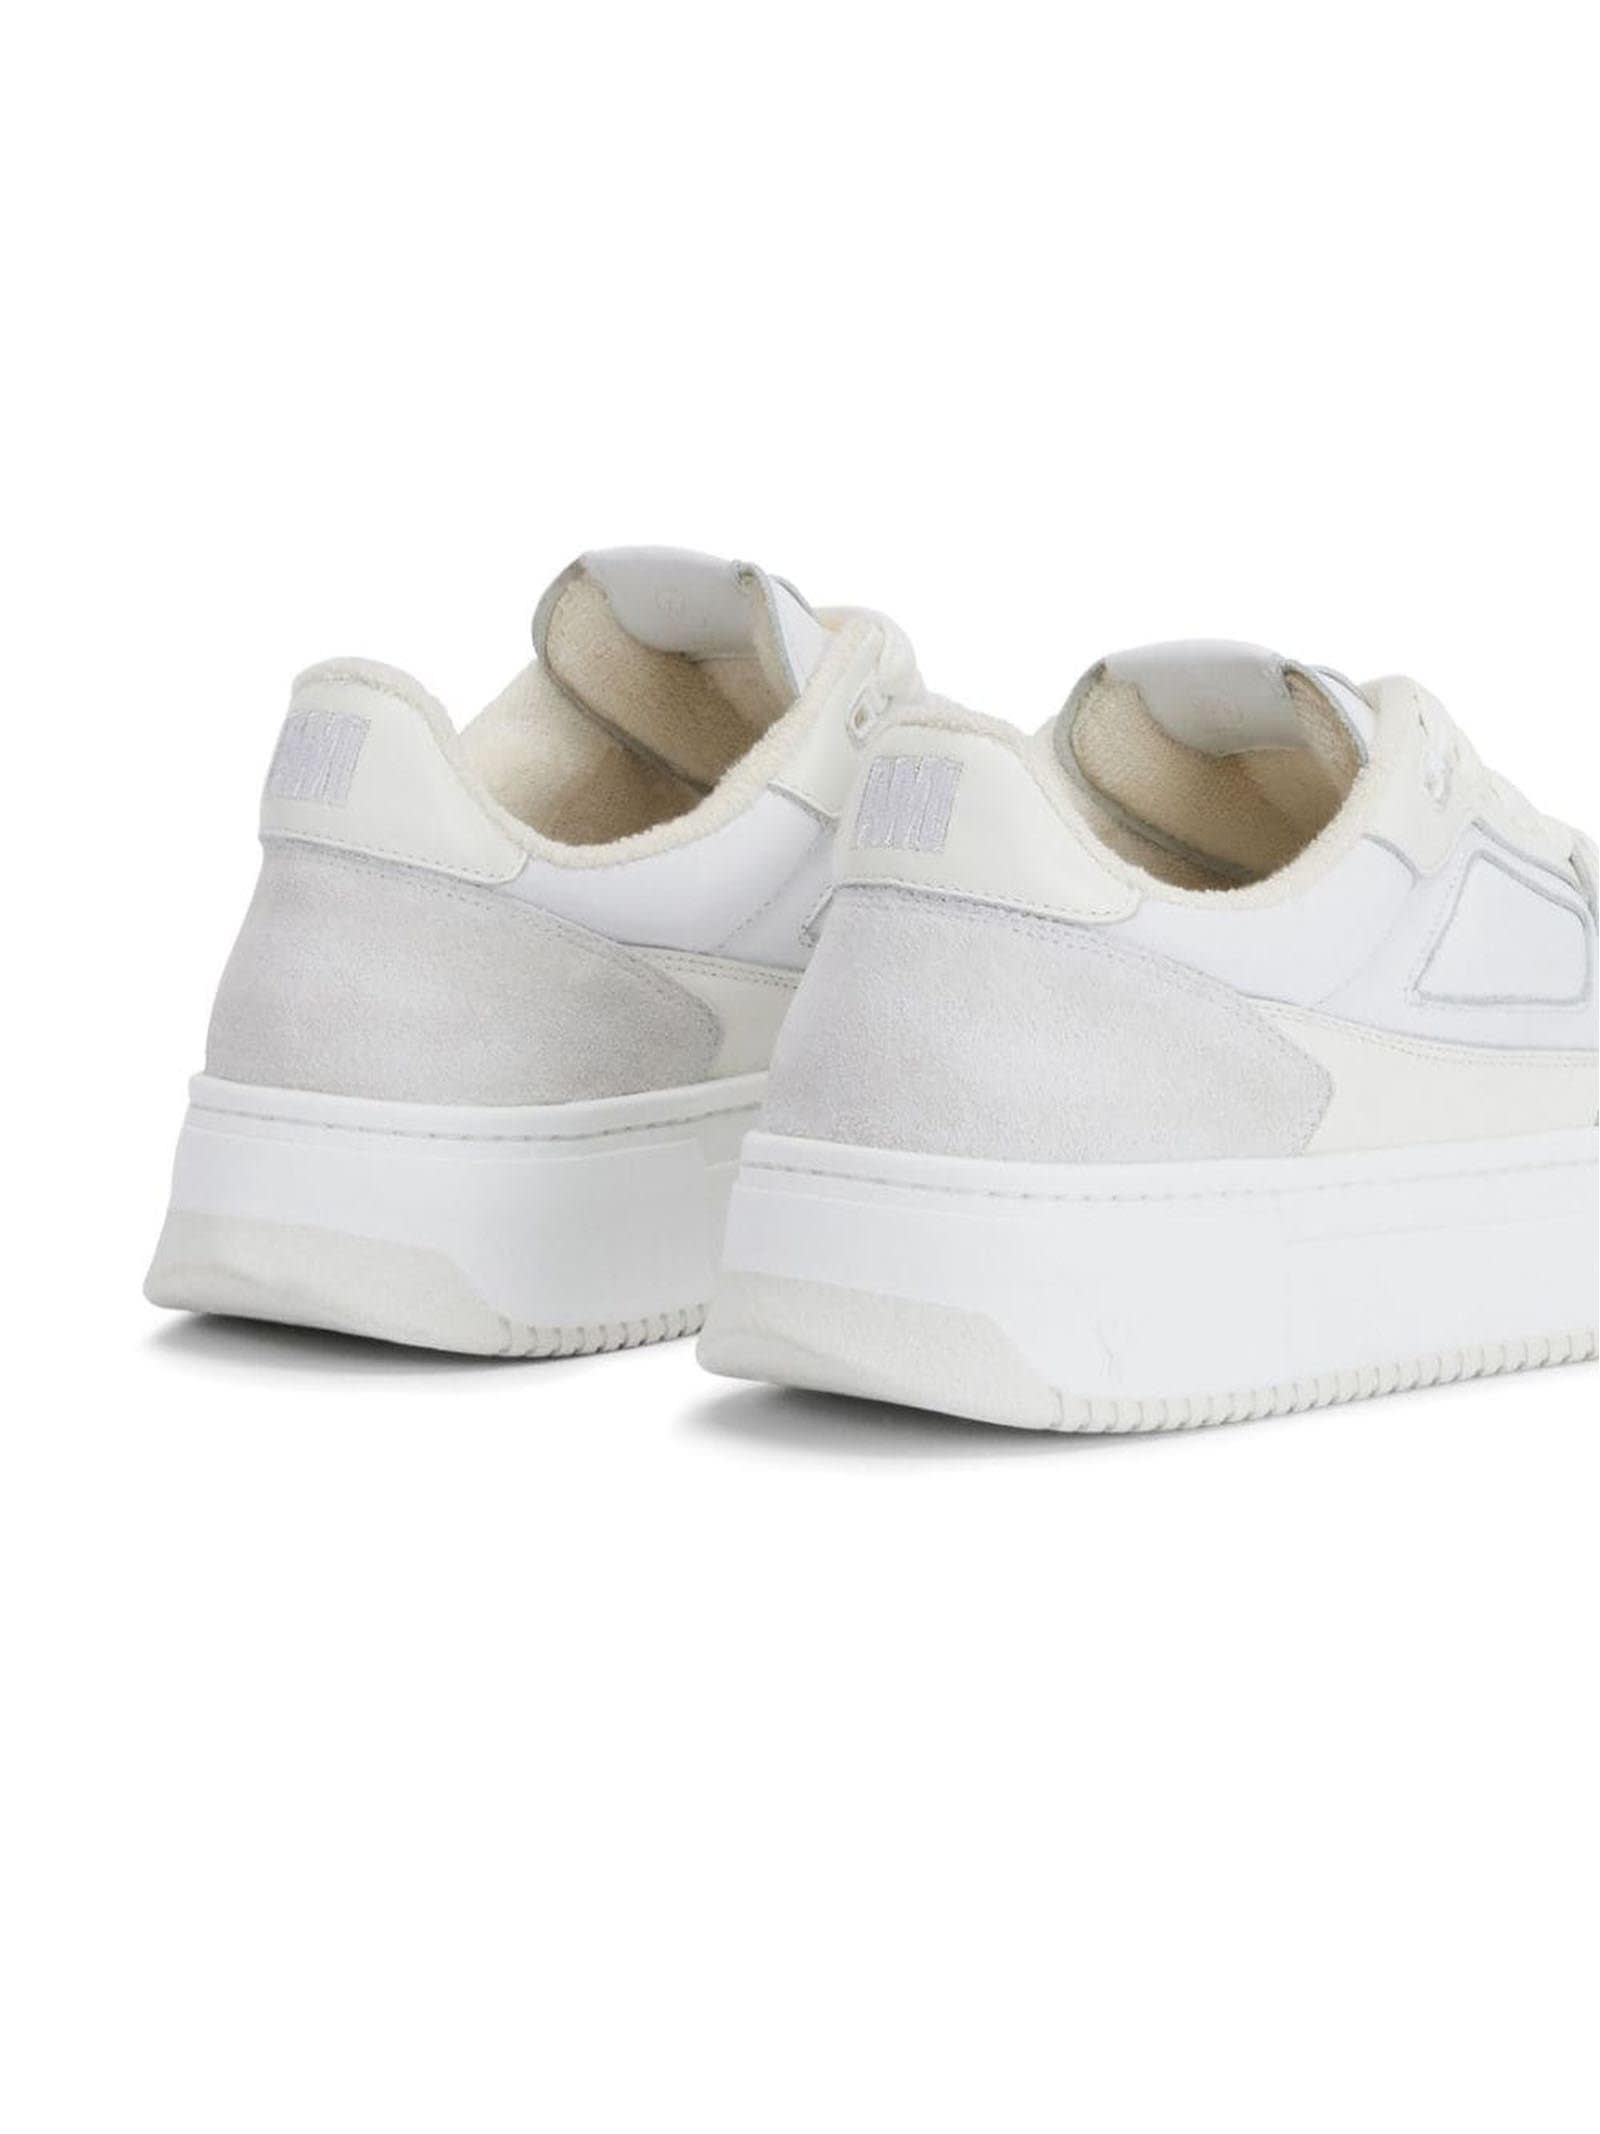 Shop Ami Alexandre Mattiussi White Calf Leather Sneakers